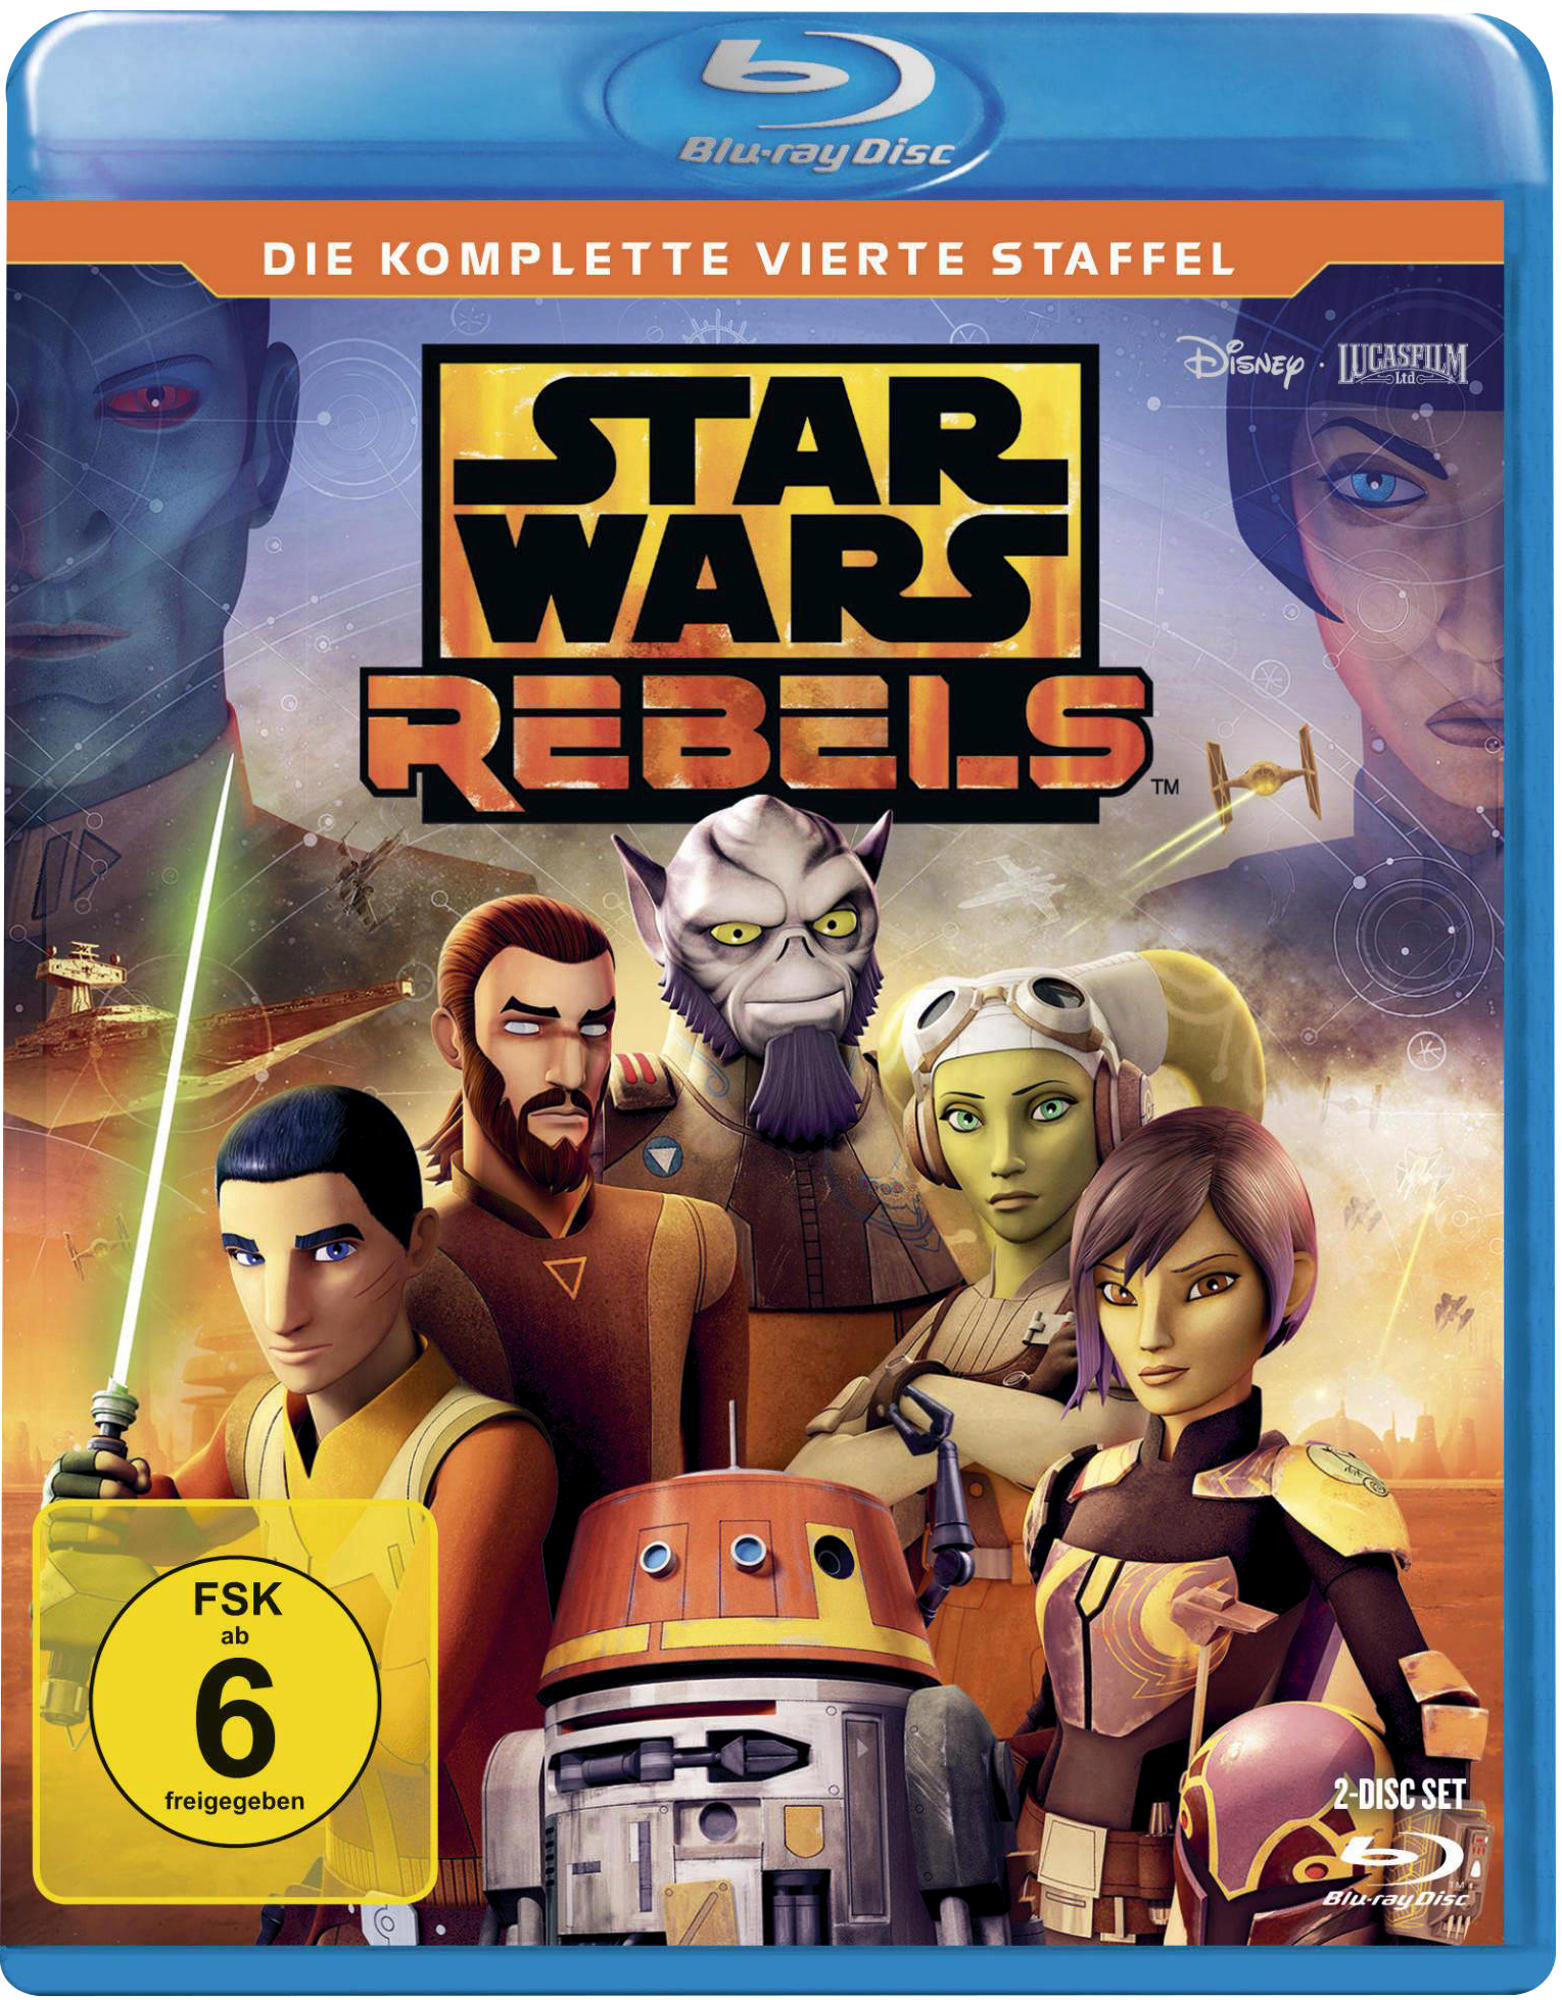 Wars - Staffel Rebels Star 4. Blu-ray